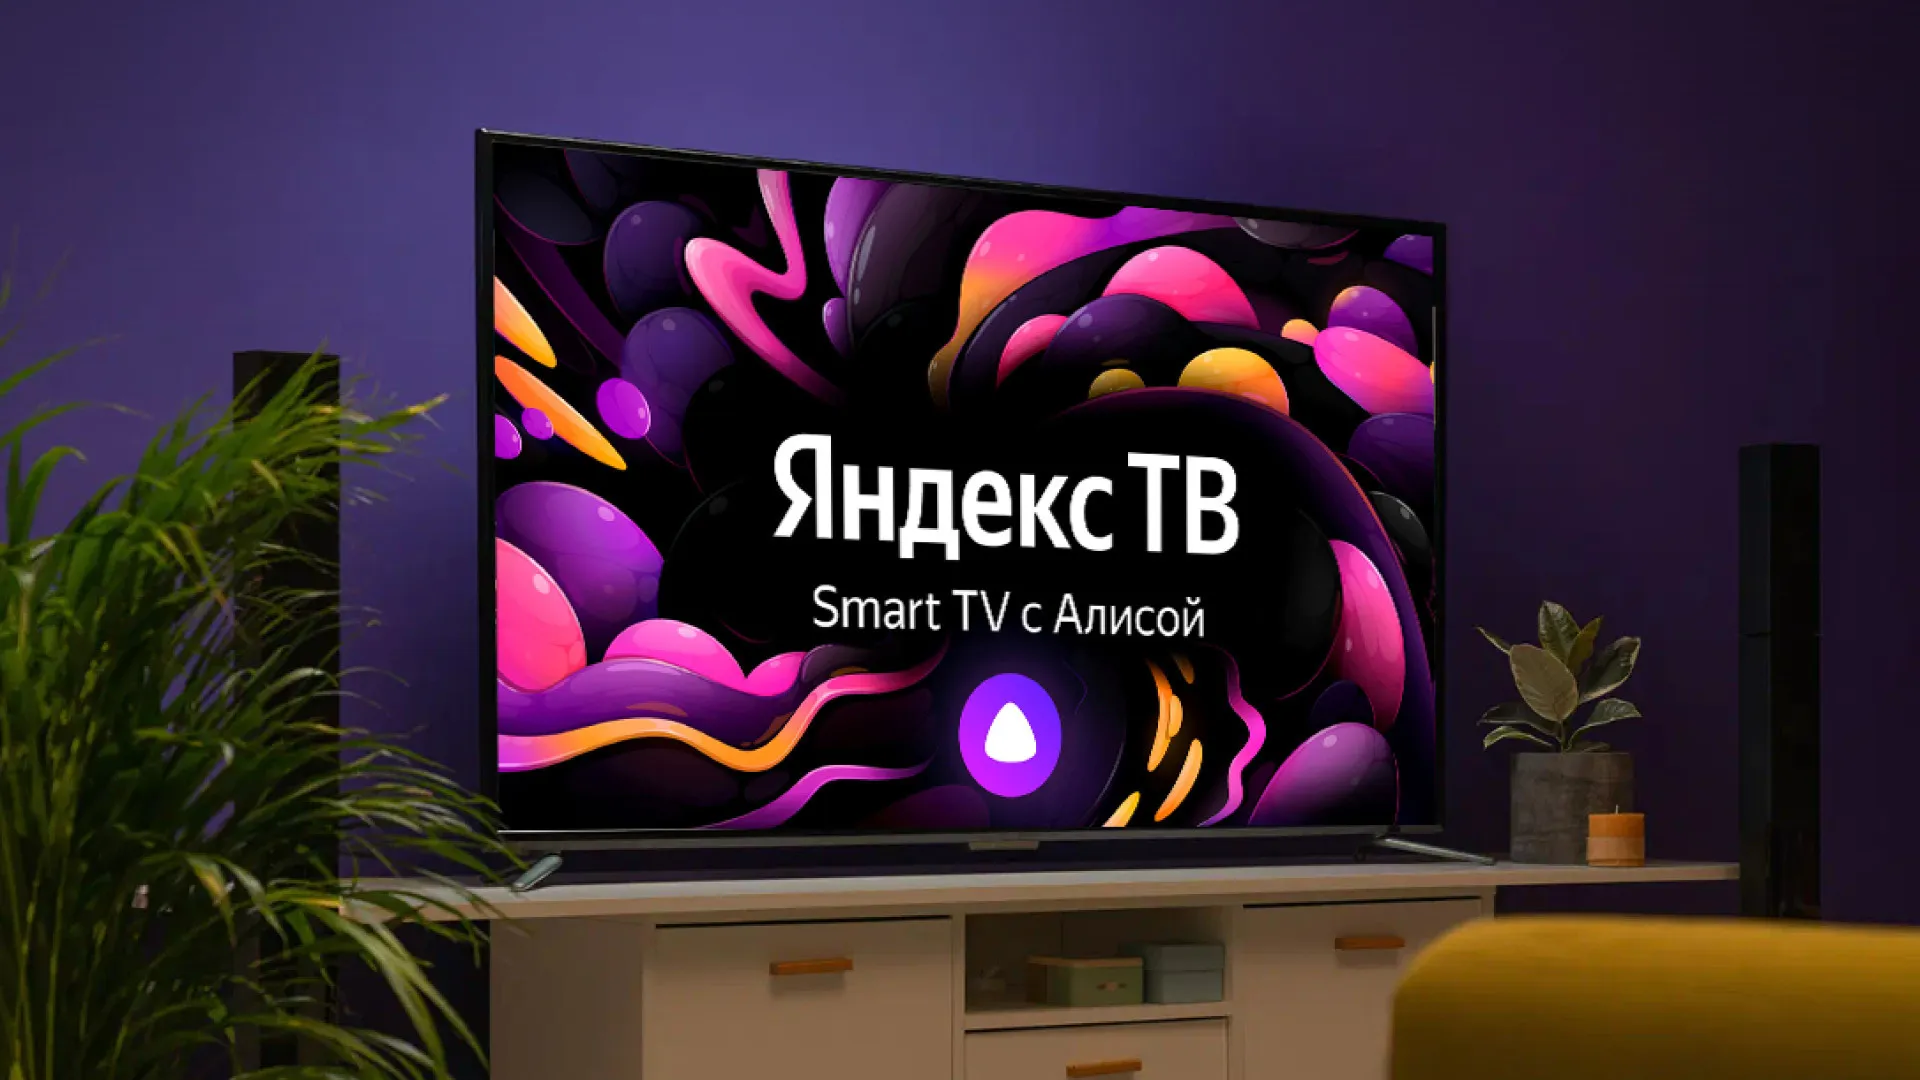 
											
											Yandex o‘zining “Alisa” ovozli yordamchisiga ega bo‘lgan ilk televizorni taqdim etdi
											
											